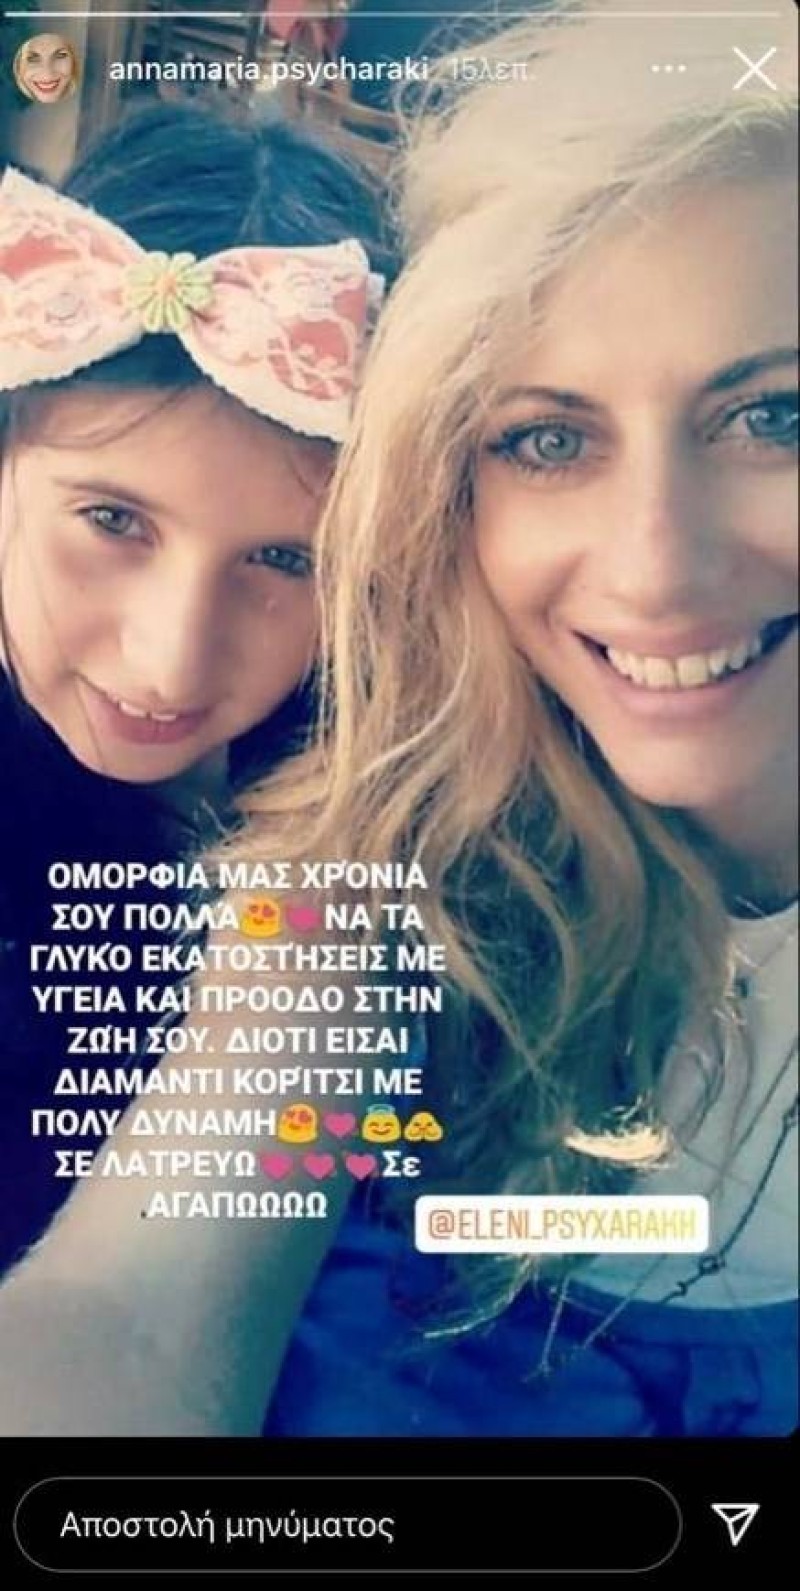 Άννα Μαρία Ψυχαράκη instagram